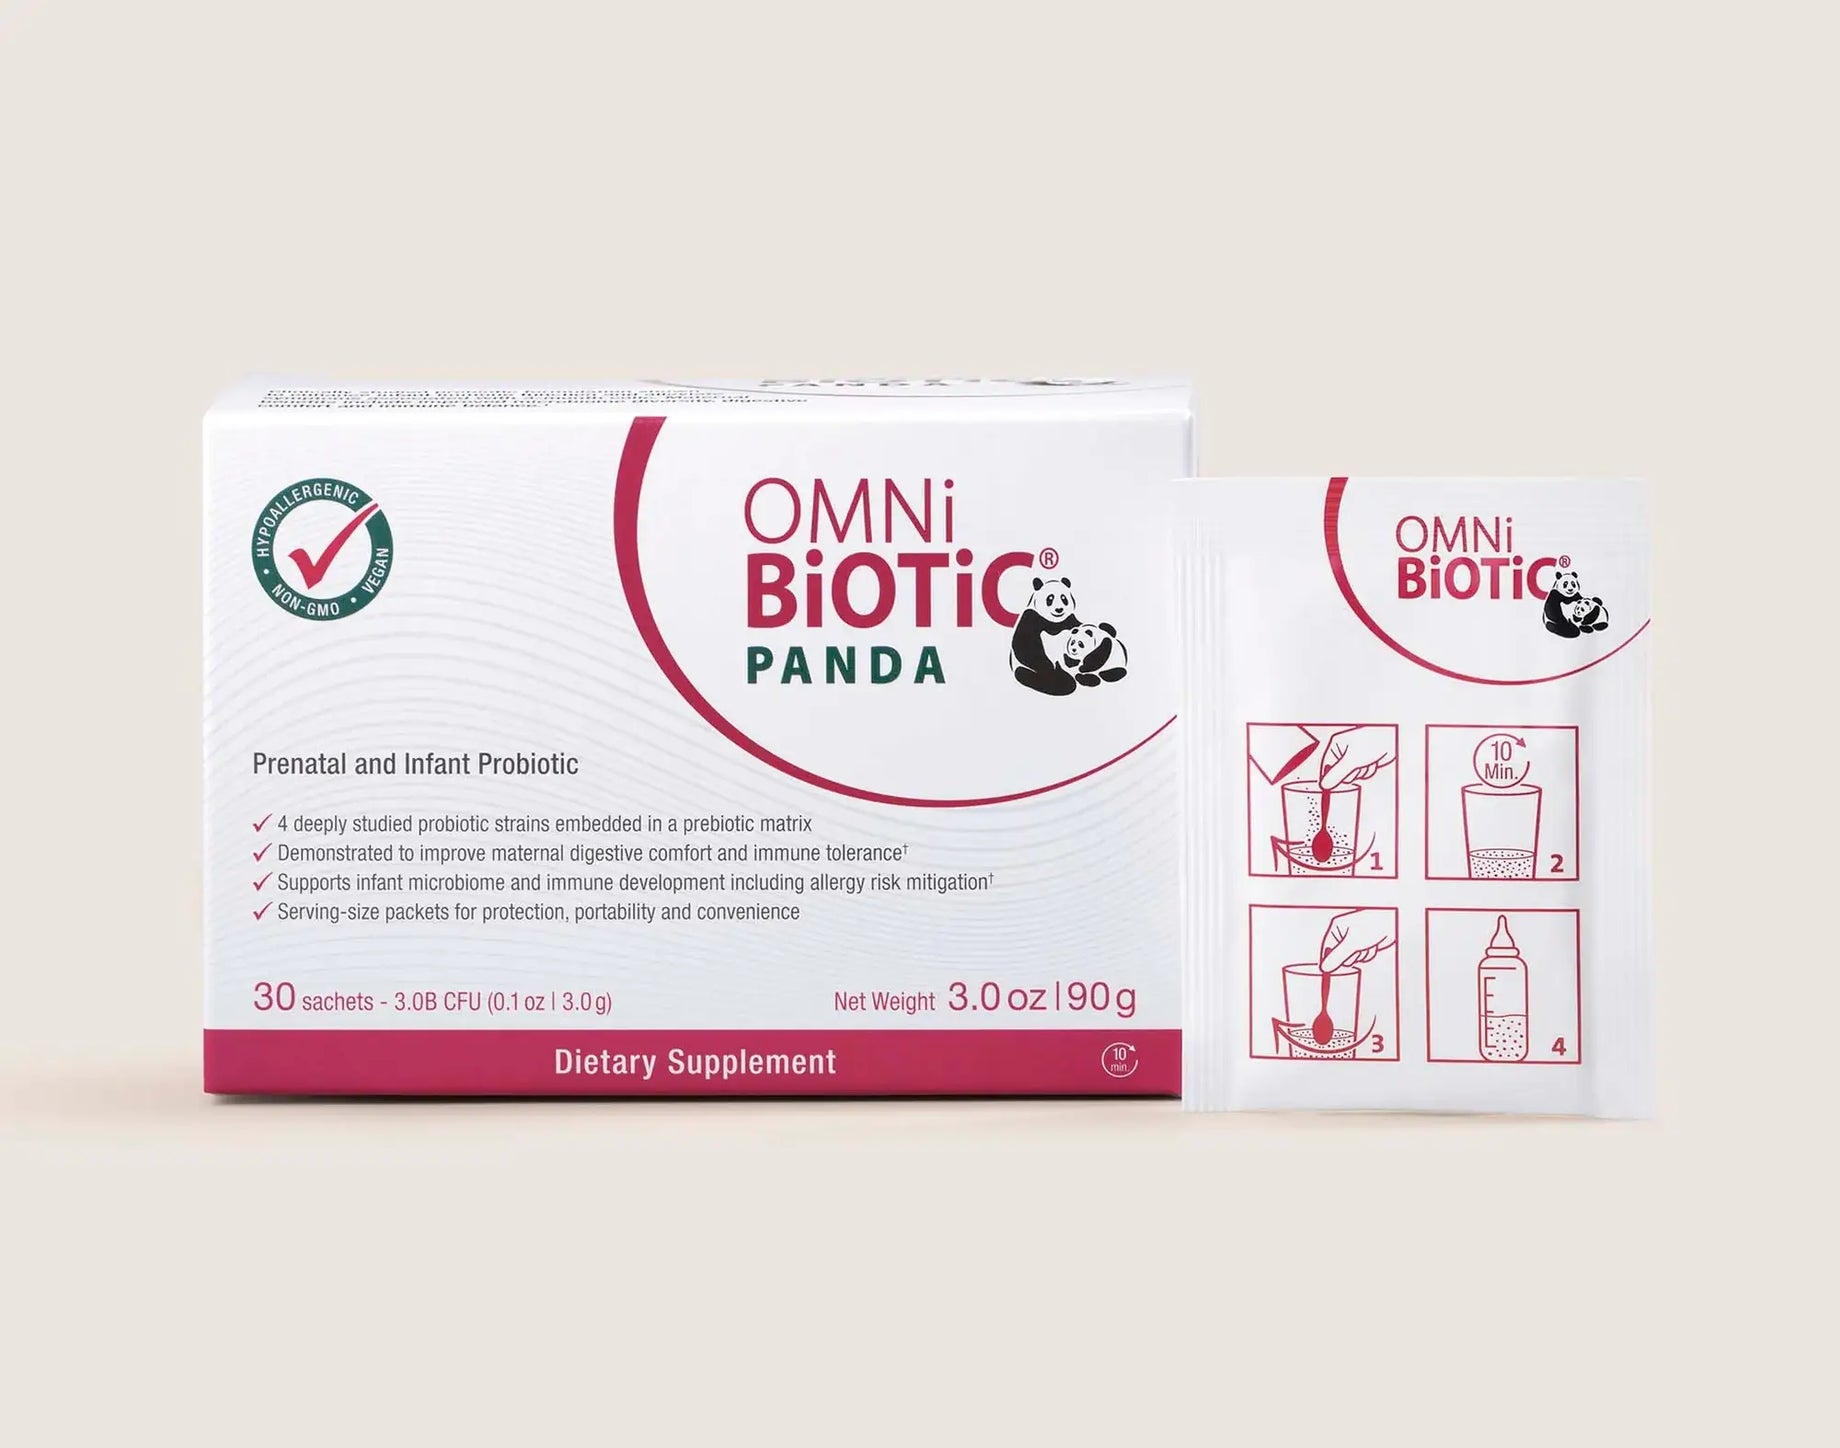 Introducing Omni-Biotic PandA